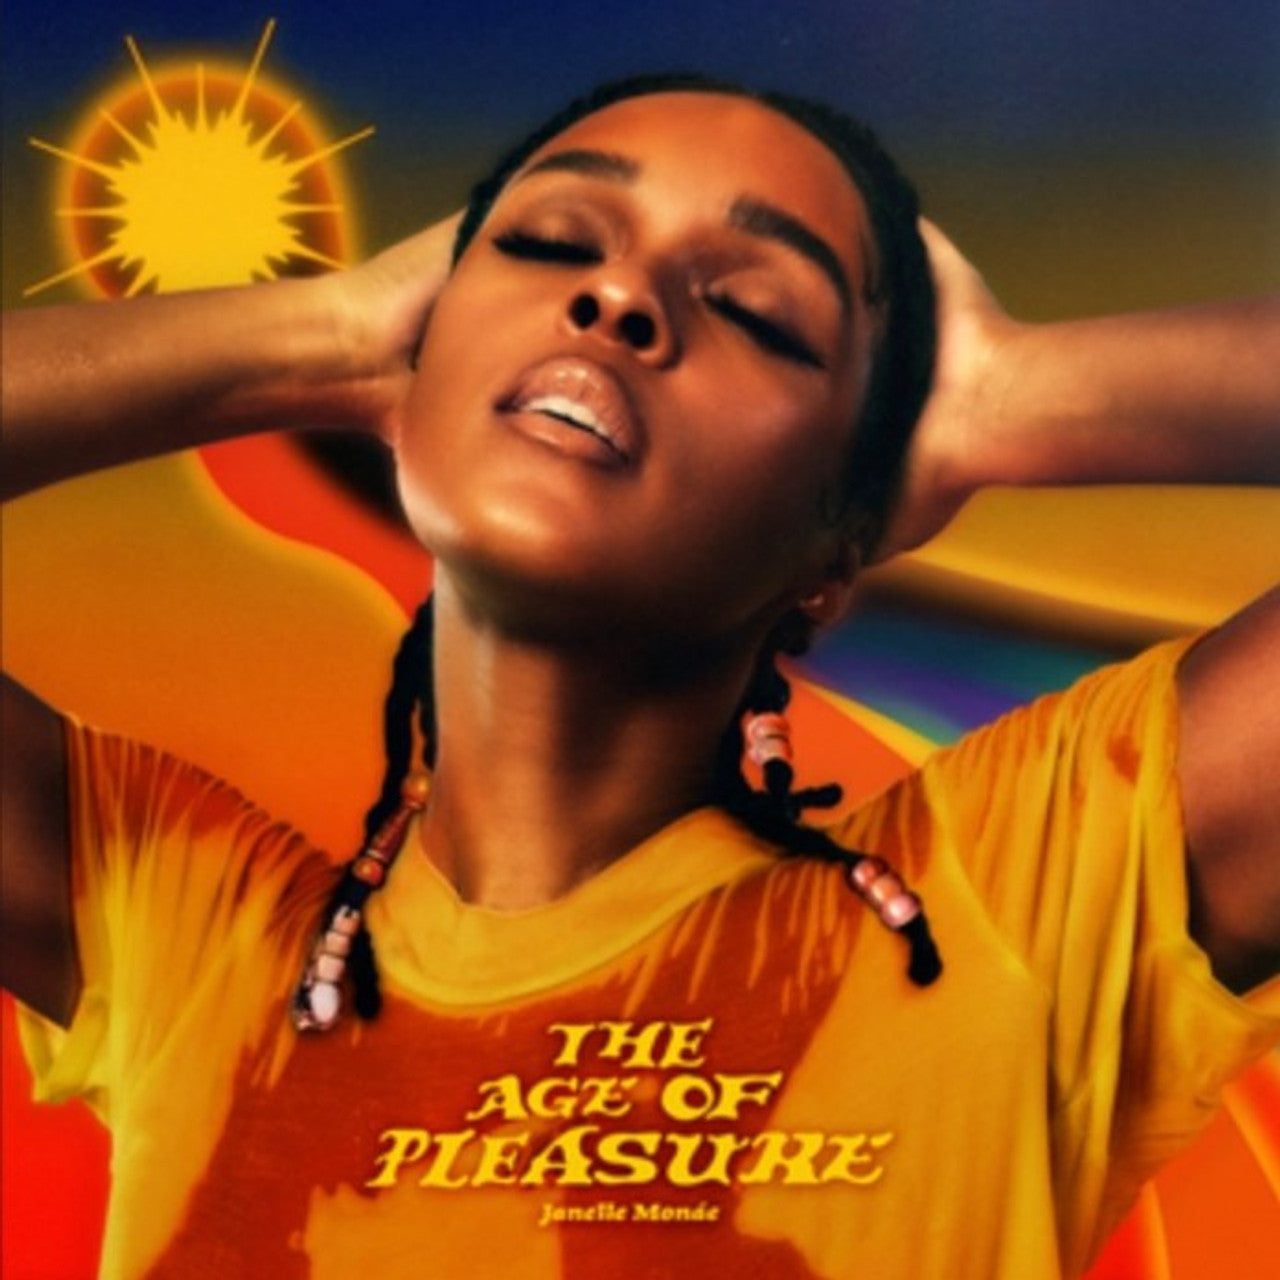 Monae, Janelle "The Age of Pleasure"